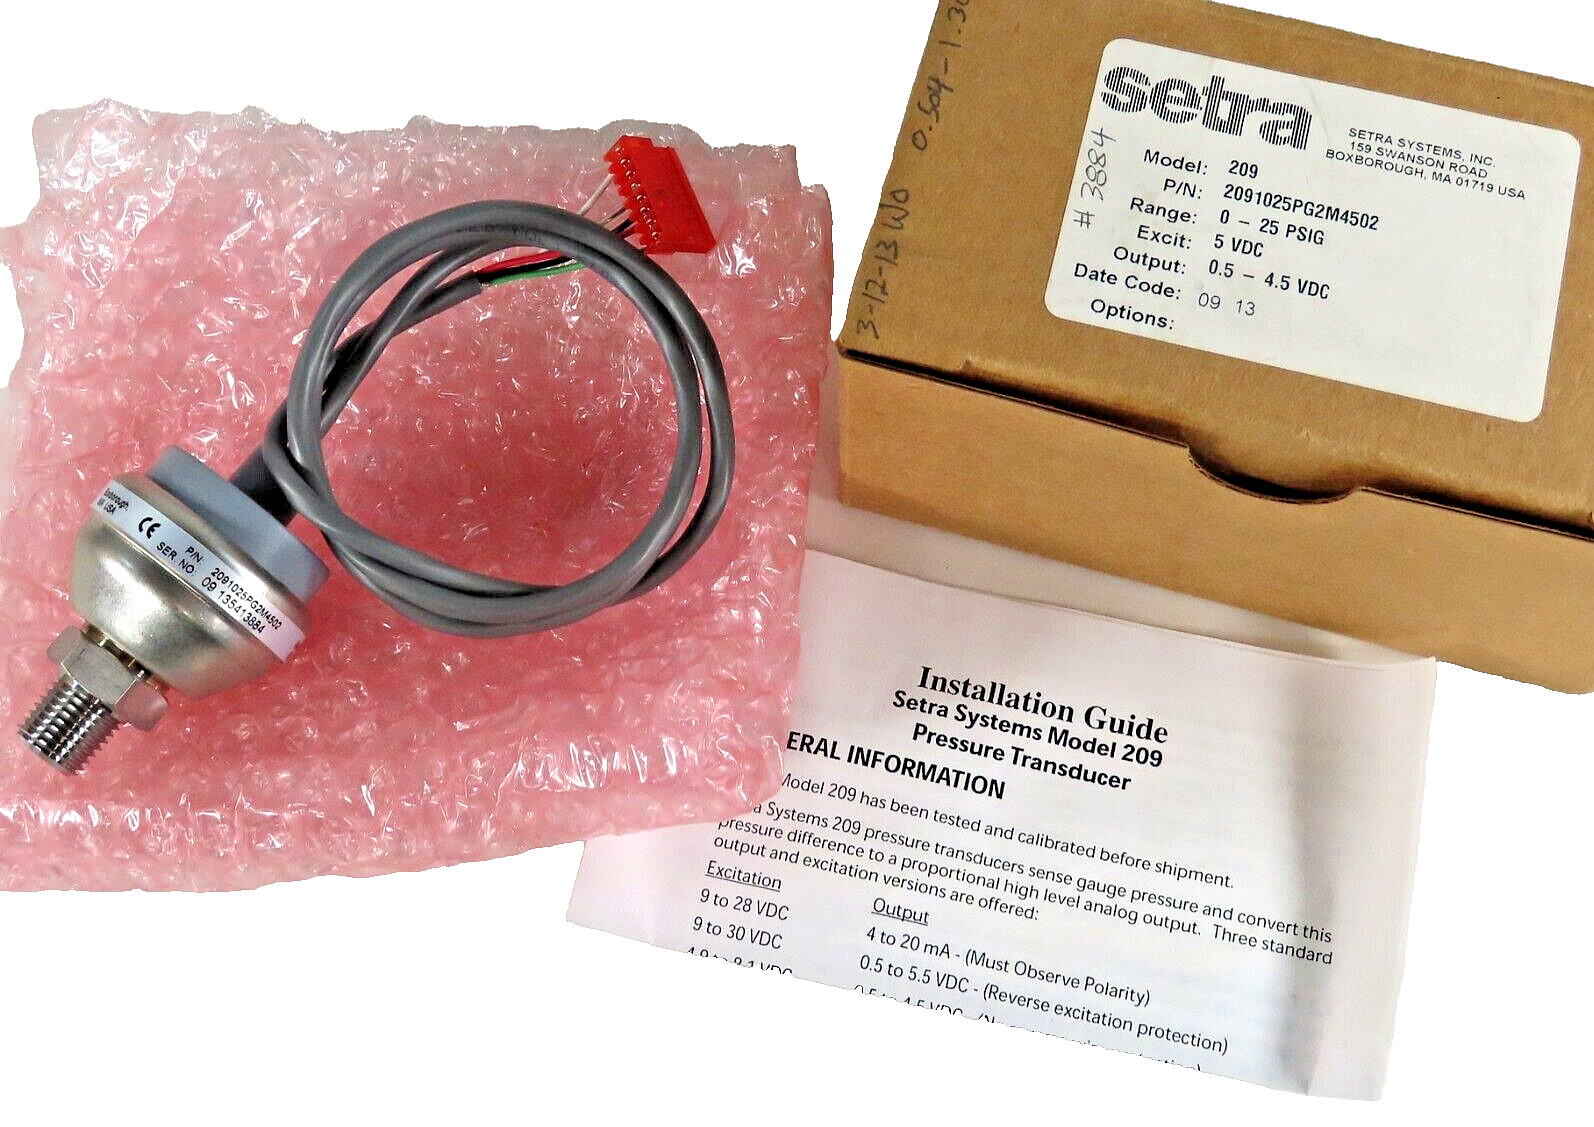 SETRA Mdl 209 PN 1025PG2M4502 Pressure Transducer 0-25 PSIG 5VDC 0.5-4.5 VDC